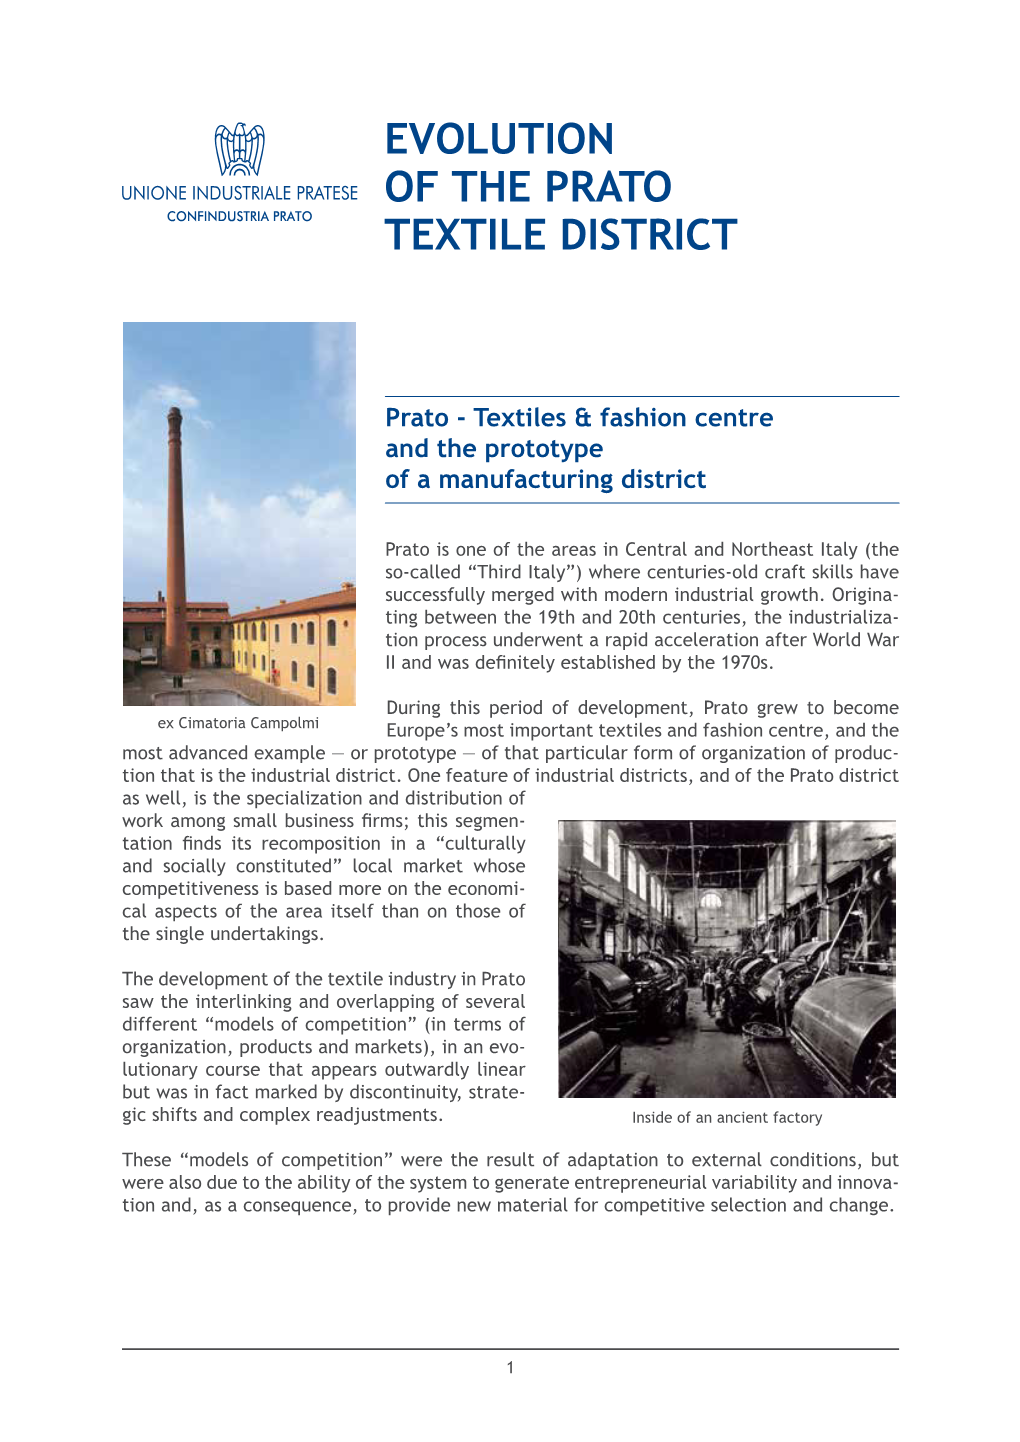 Evolution of the Prato Textile District